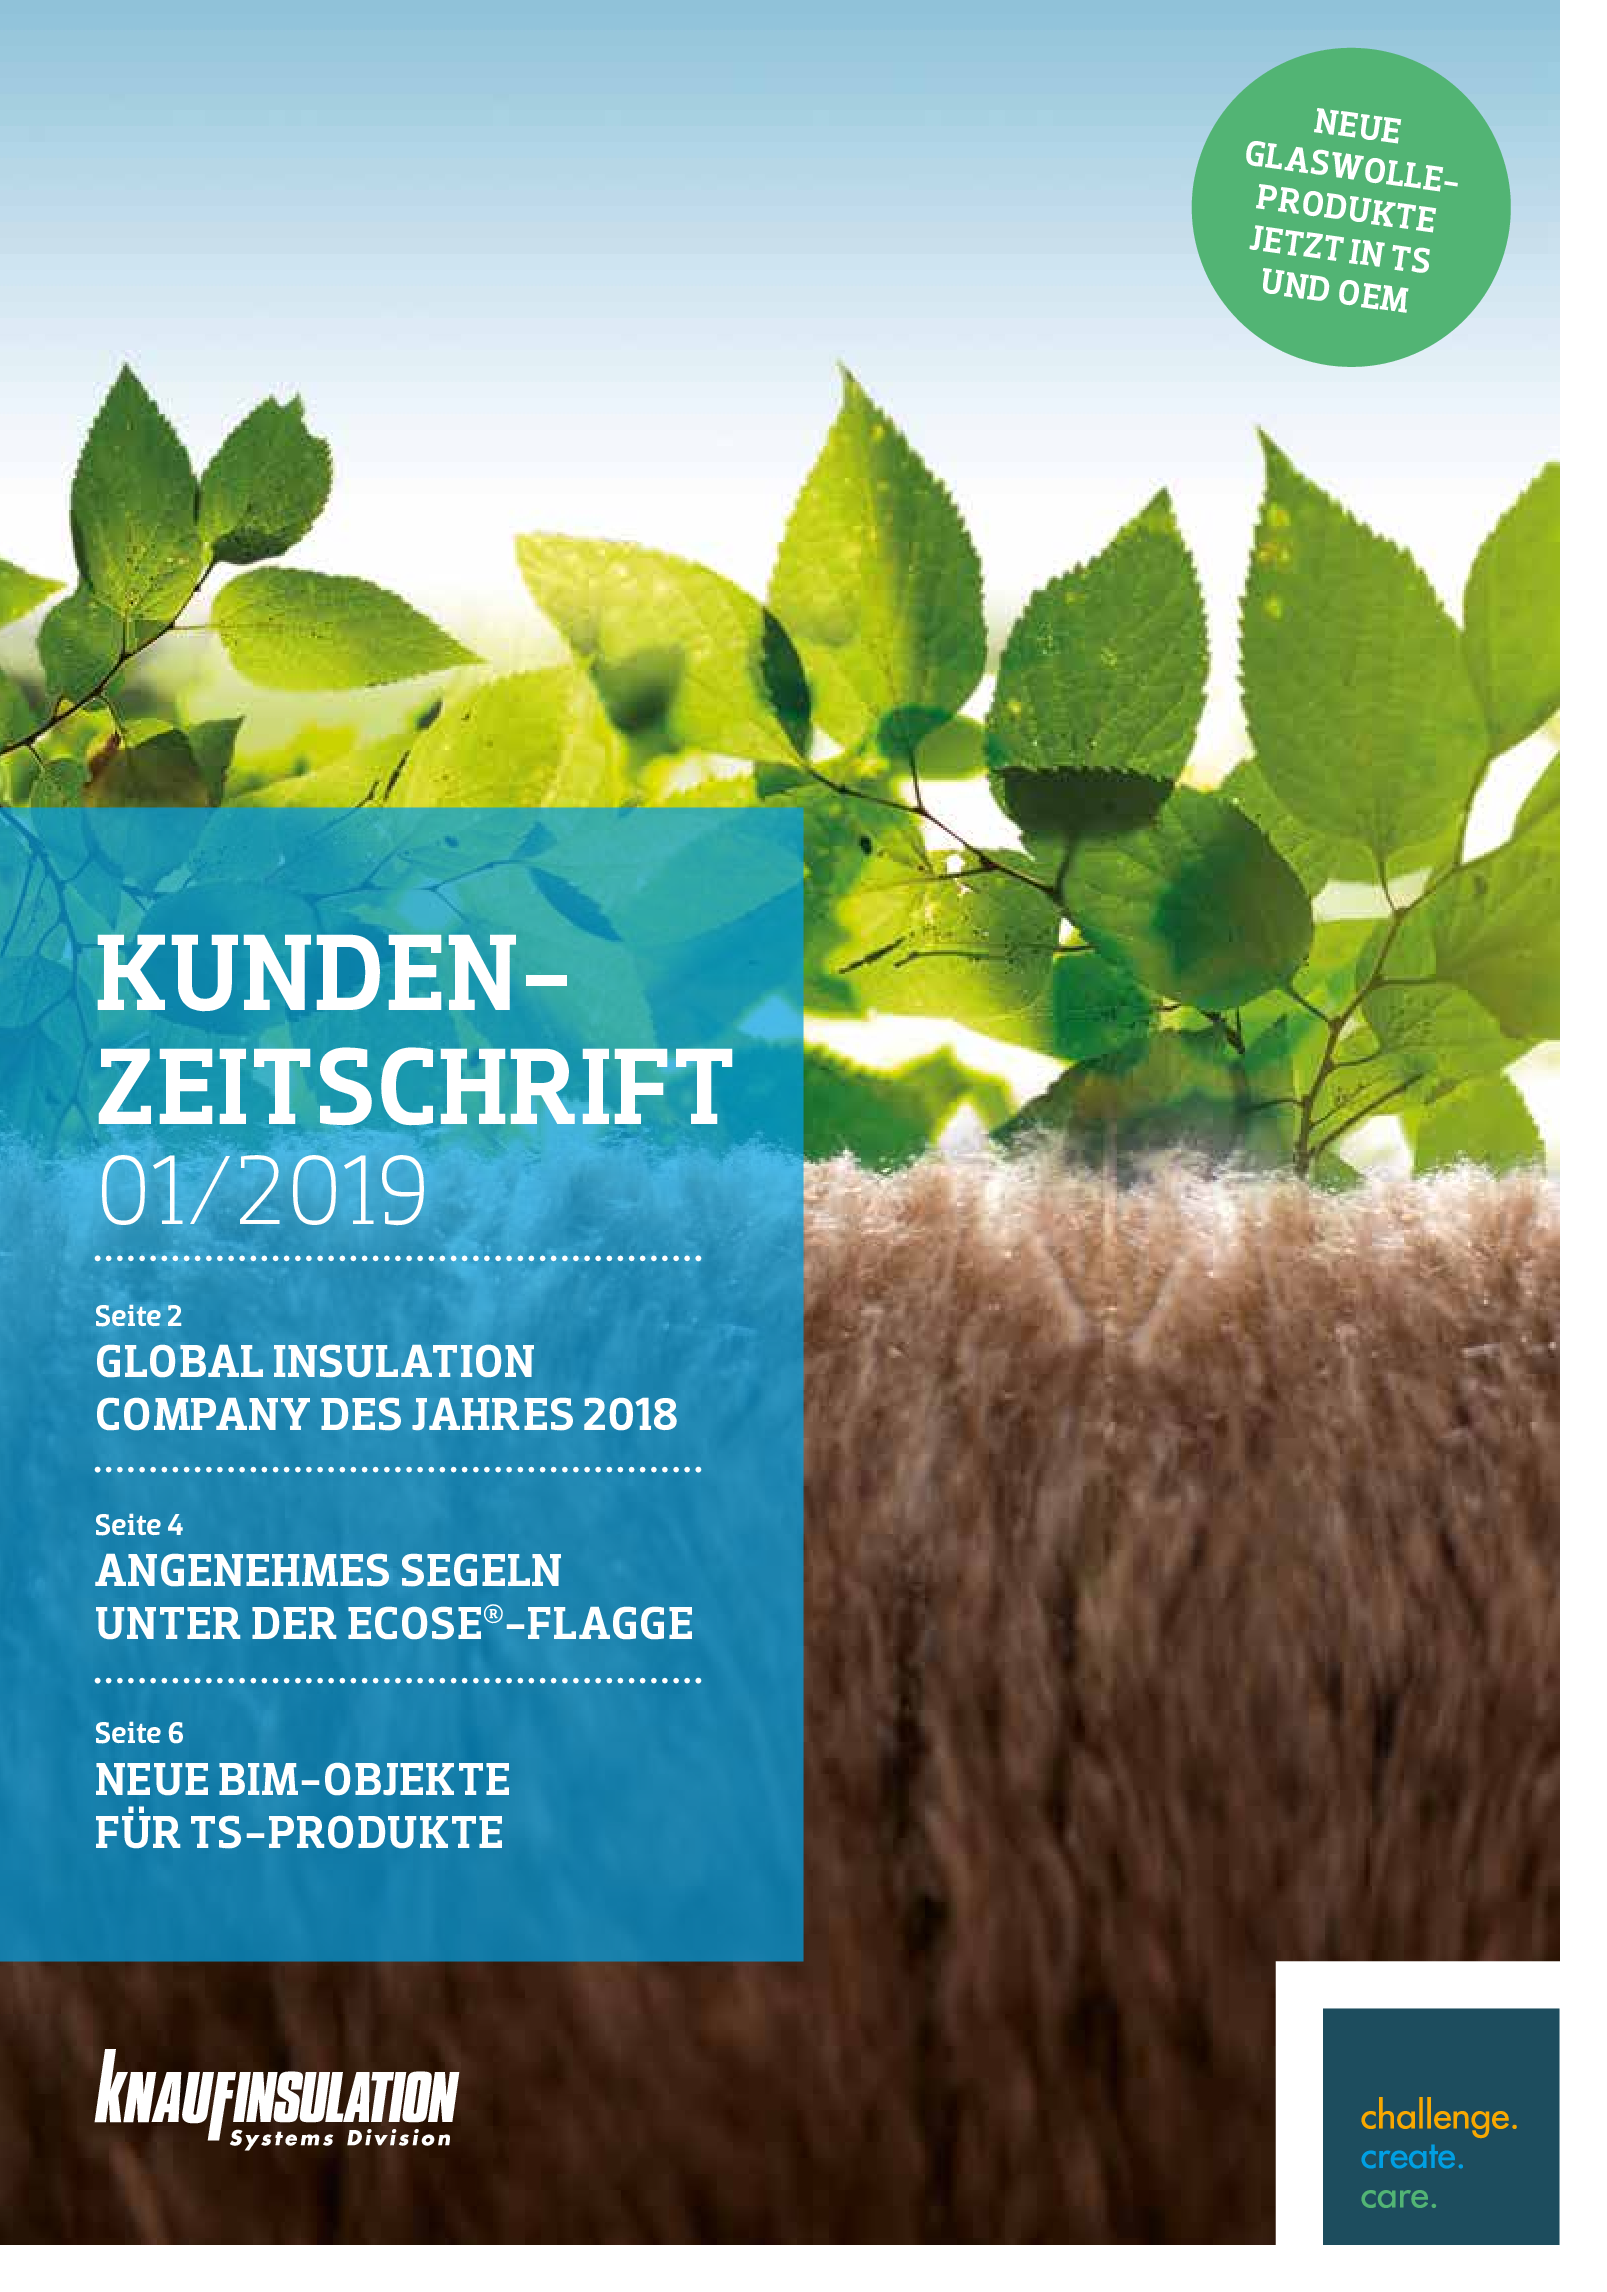 Kunden Zeitschrift_Knauf Insulation Systems Divison_01-2019